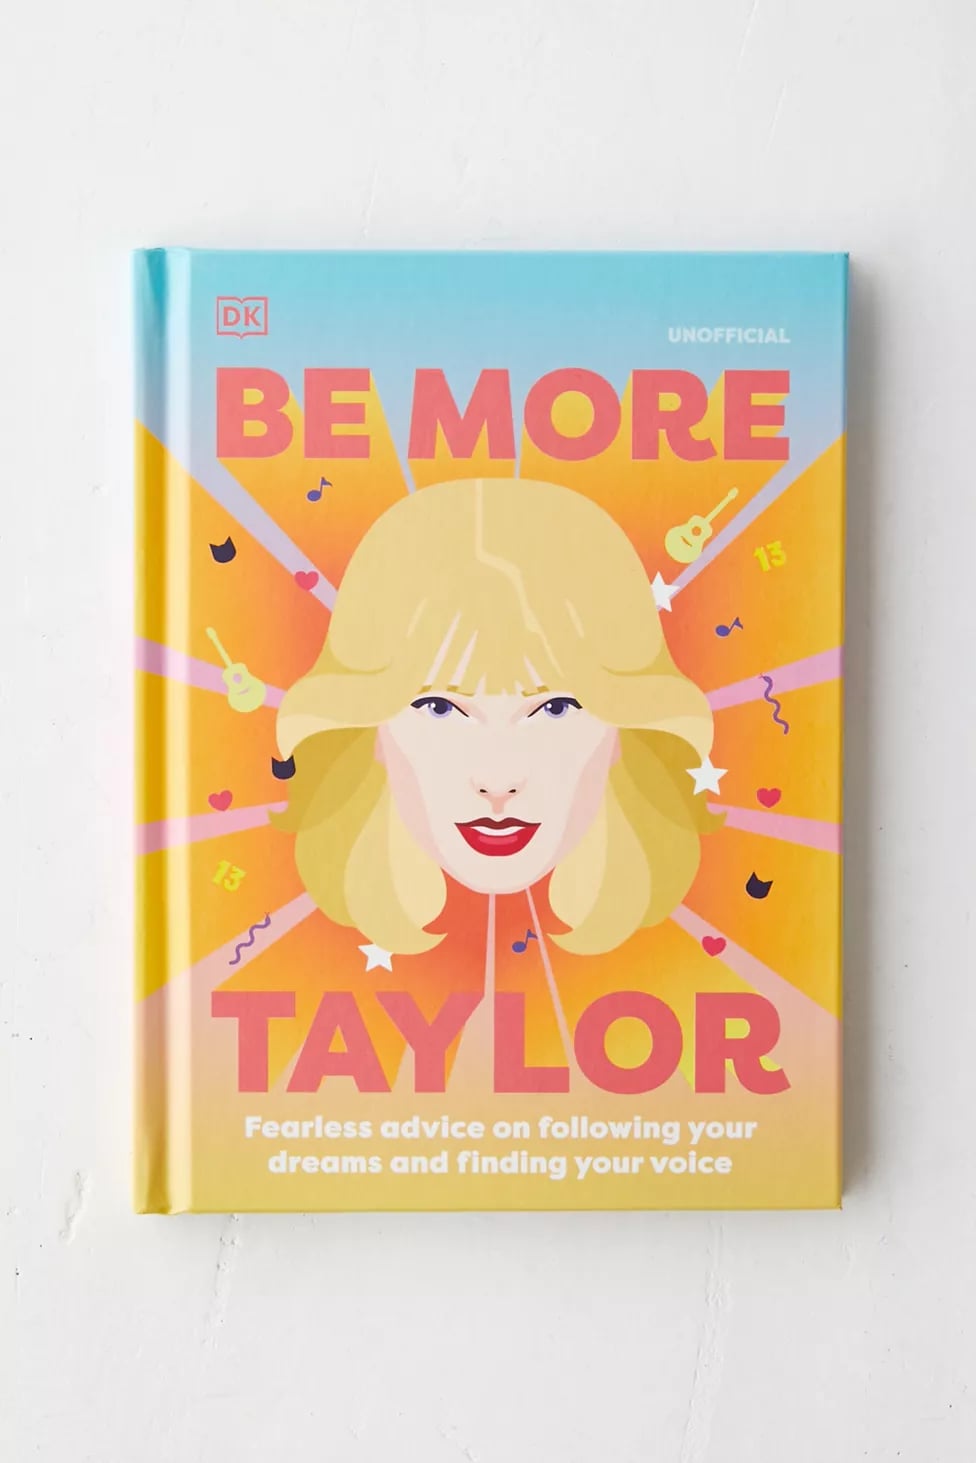 Gift Ideas for Swifties, Taylor Swift Fan Gift